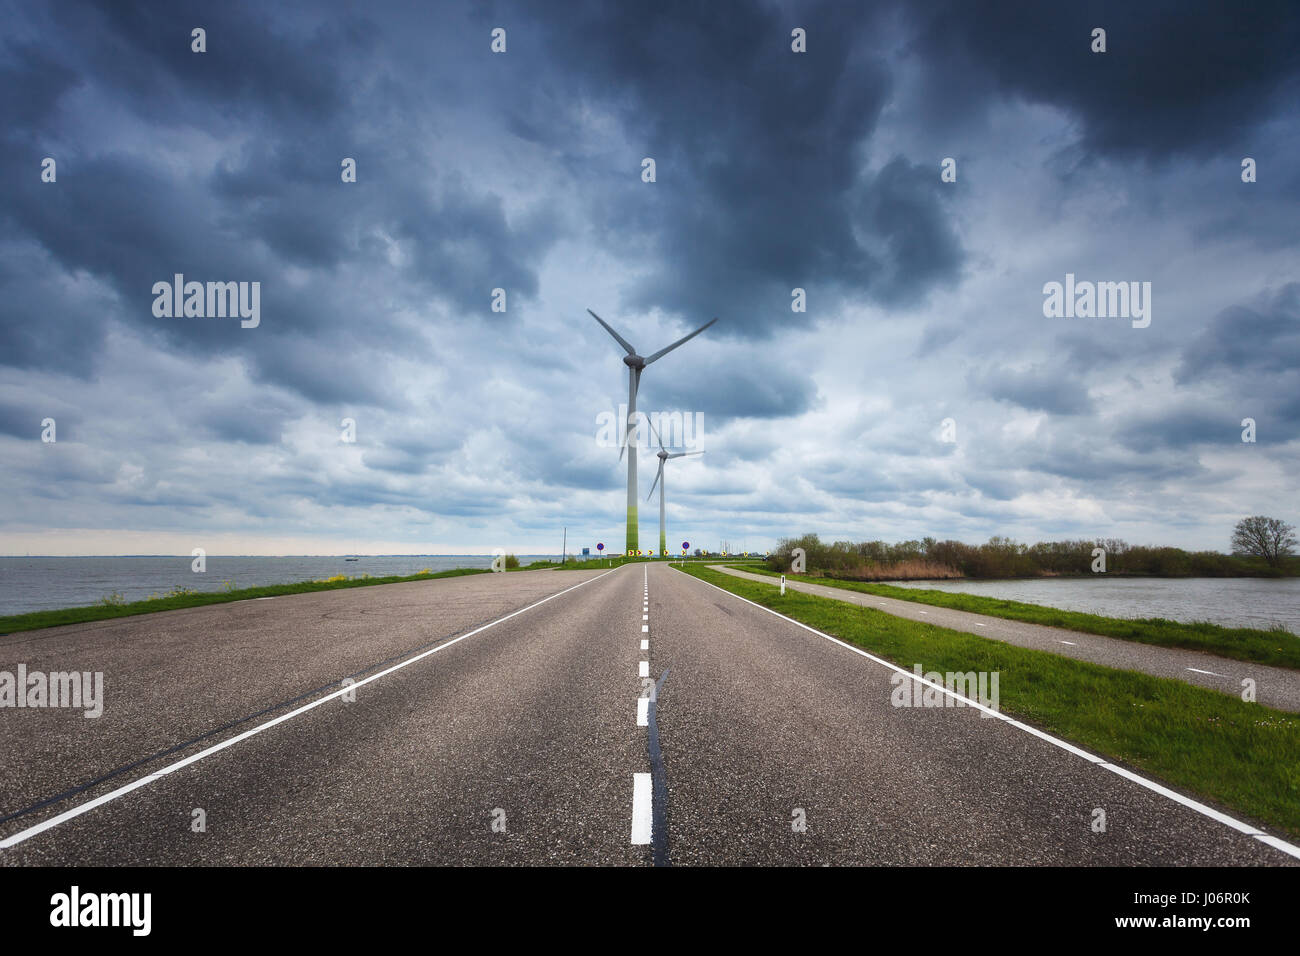 Schöne asphaltierte Straße mit Windkraftanlagen zur Stromerzeugung. Windmühlen zur Stromerzeugung. Landschaft mit Strasse, grünen Rasen und wind m Stockfoto